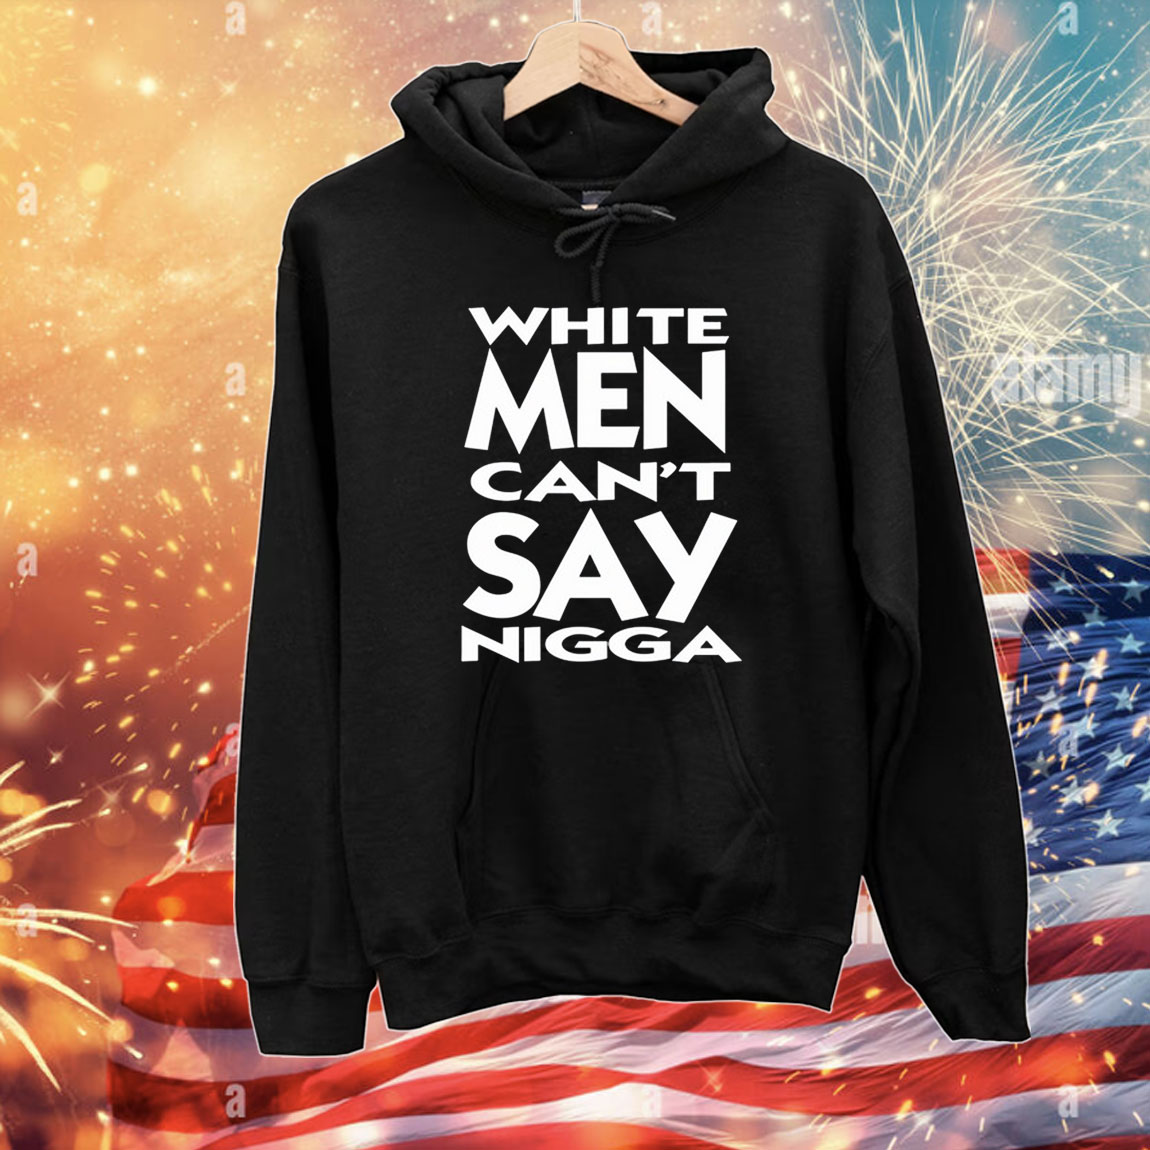 White Men Can't Say Nigga TShirts